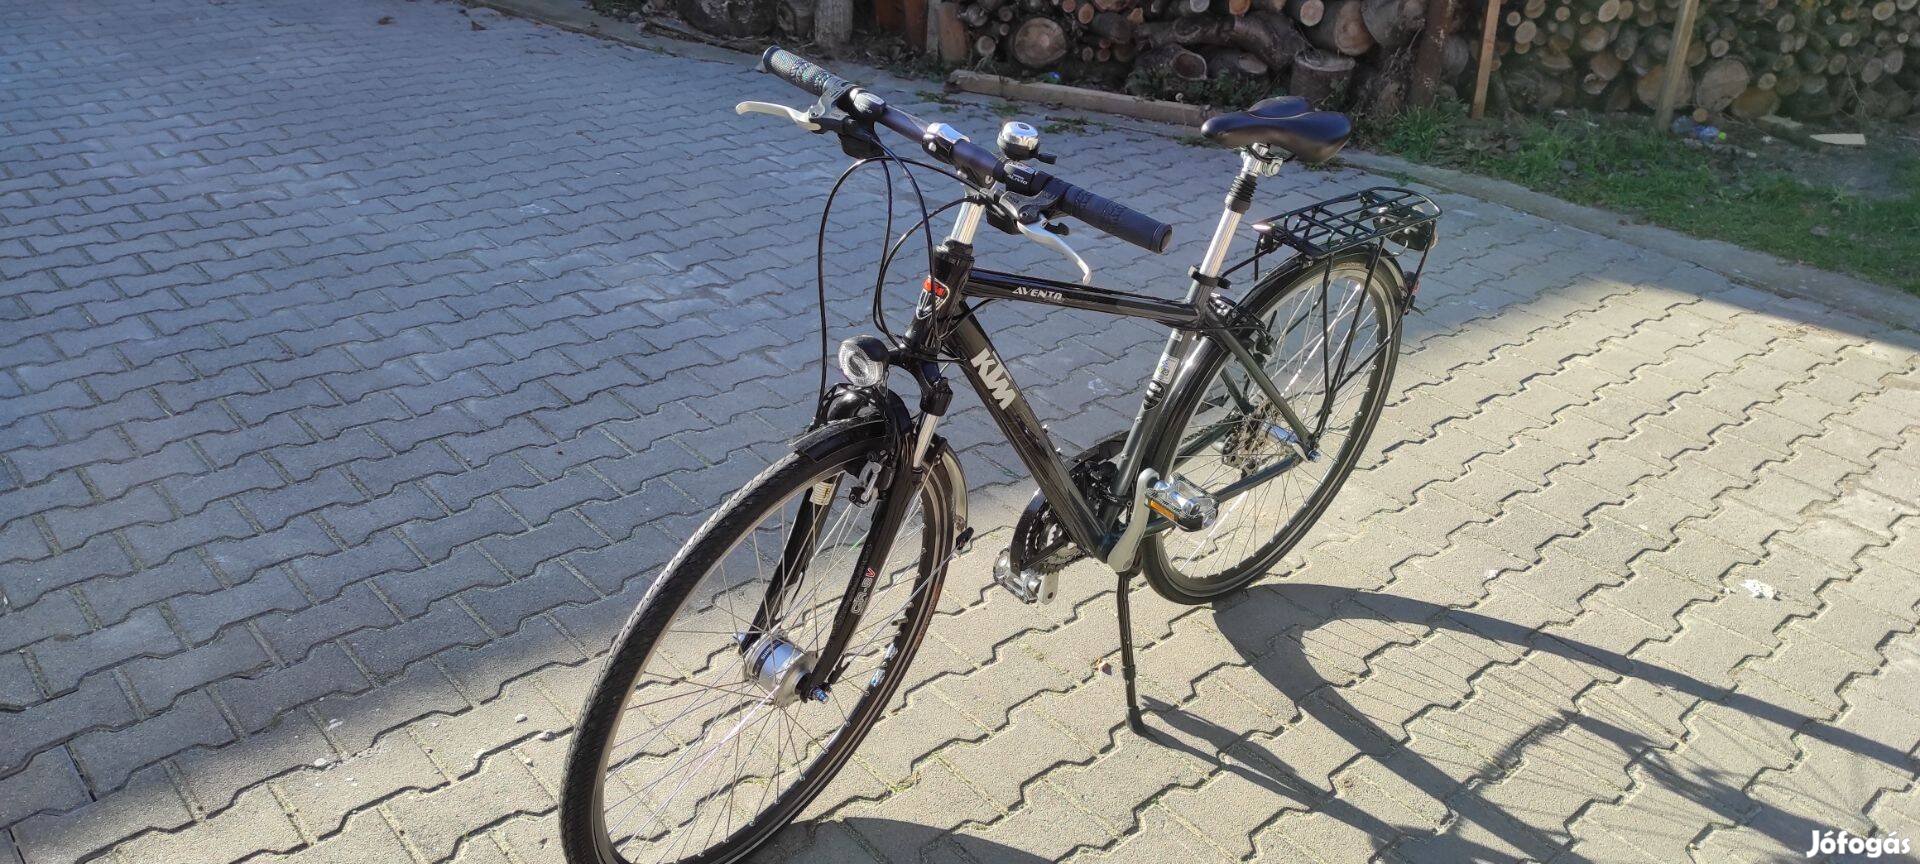 Eladó KTM Avento Bicikli